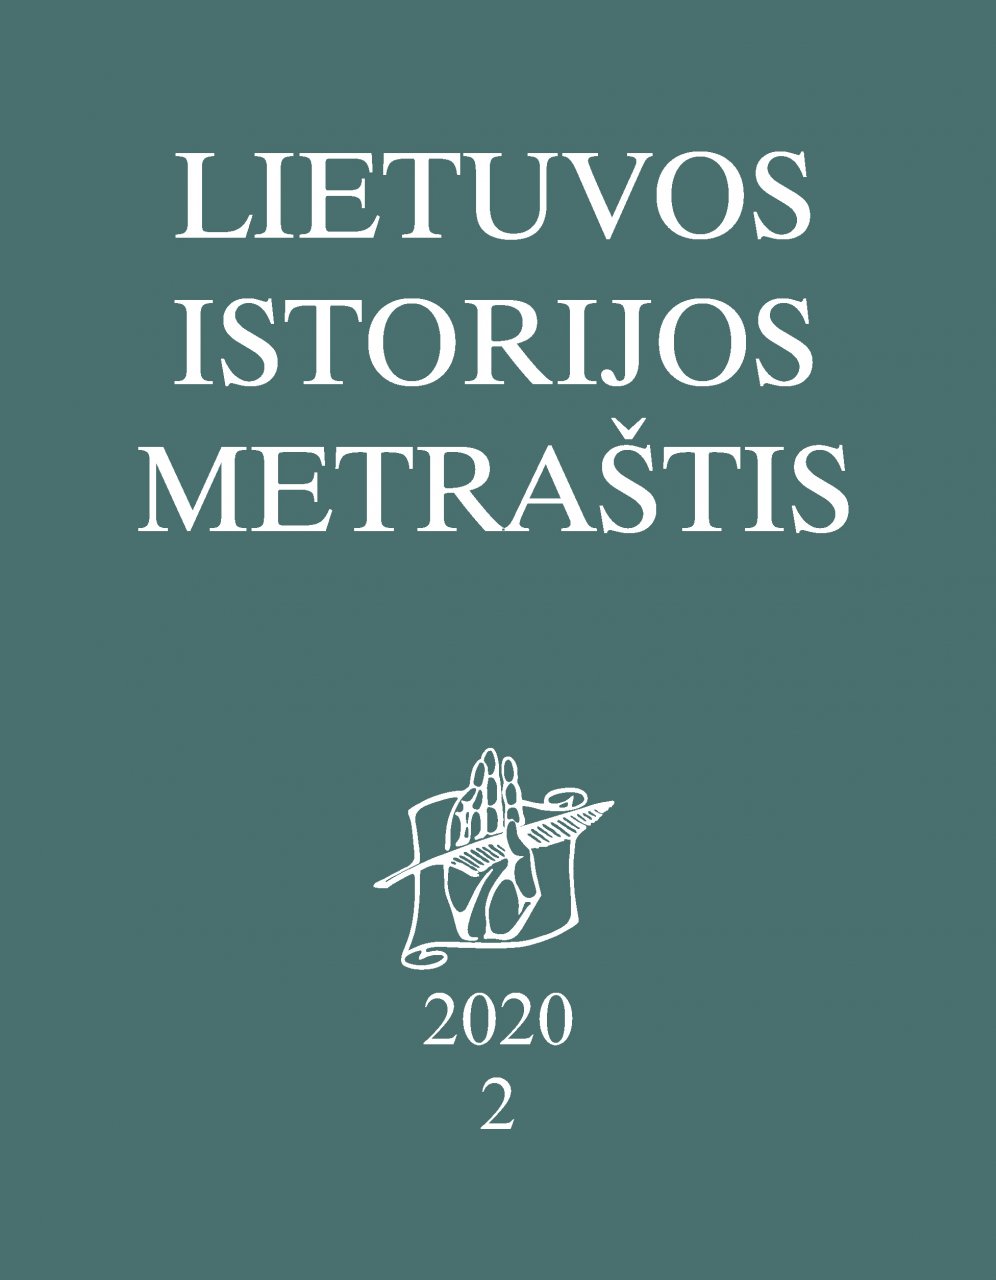 Lietuvos istorijos metraštis 2020 metai 2